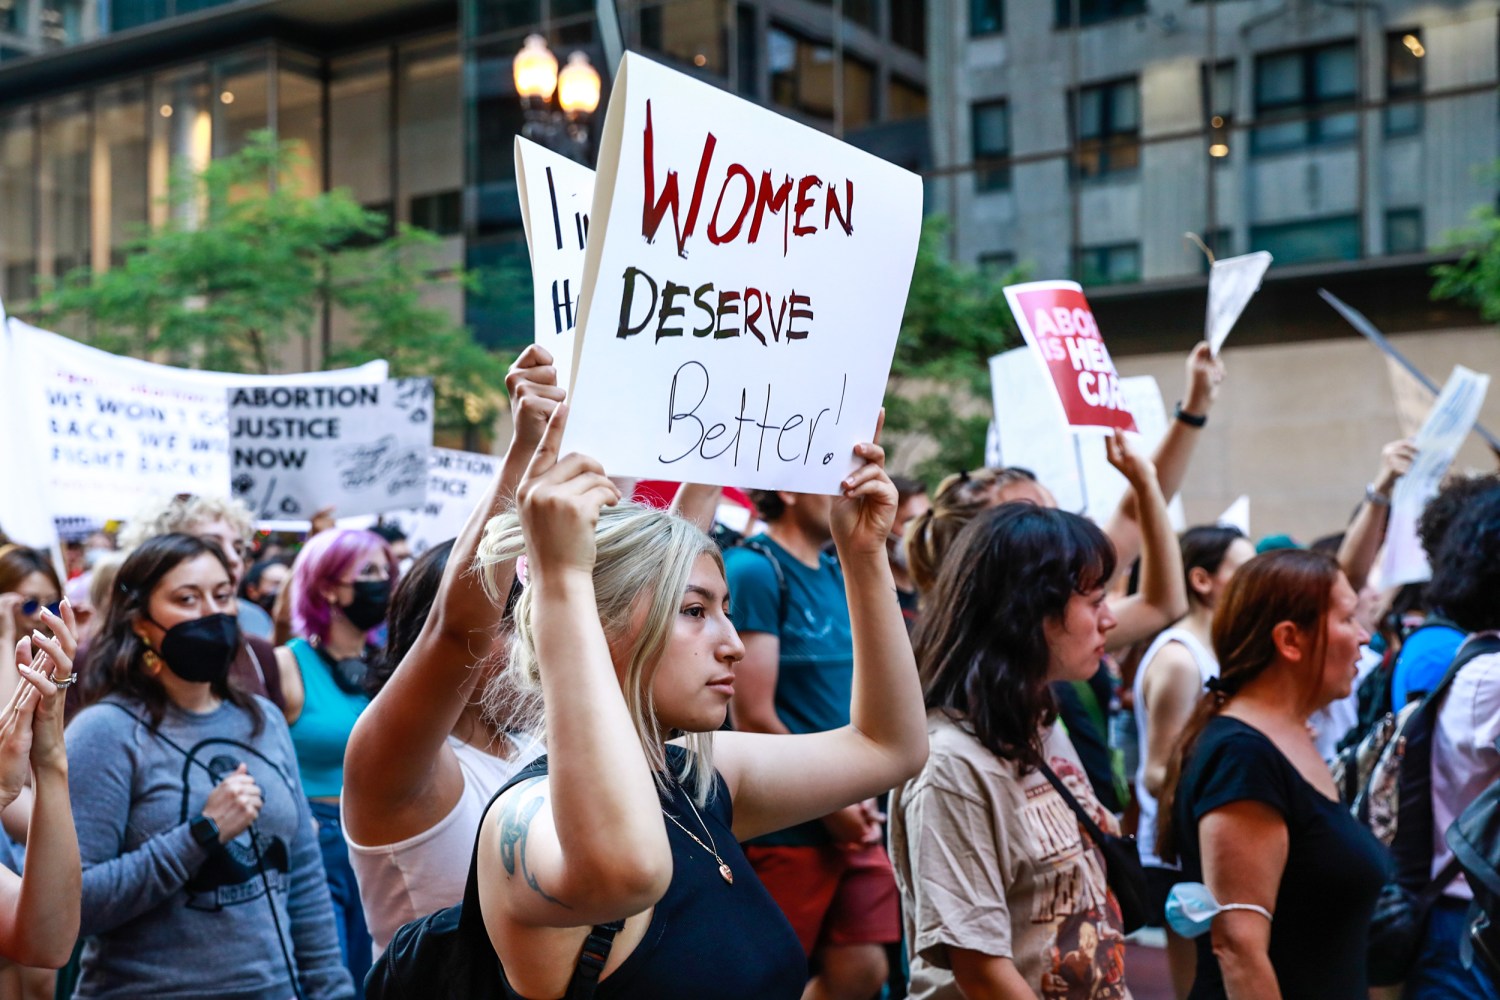 Illinois March for Life participants proclaim “women deserve